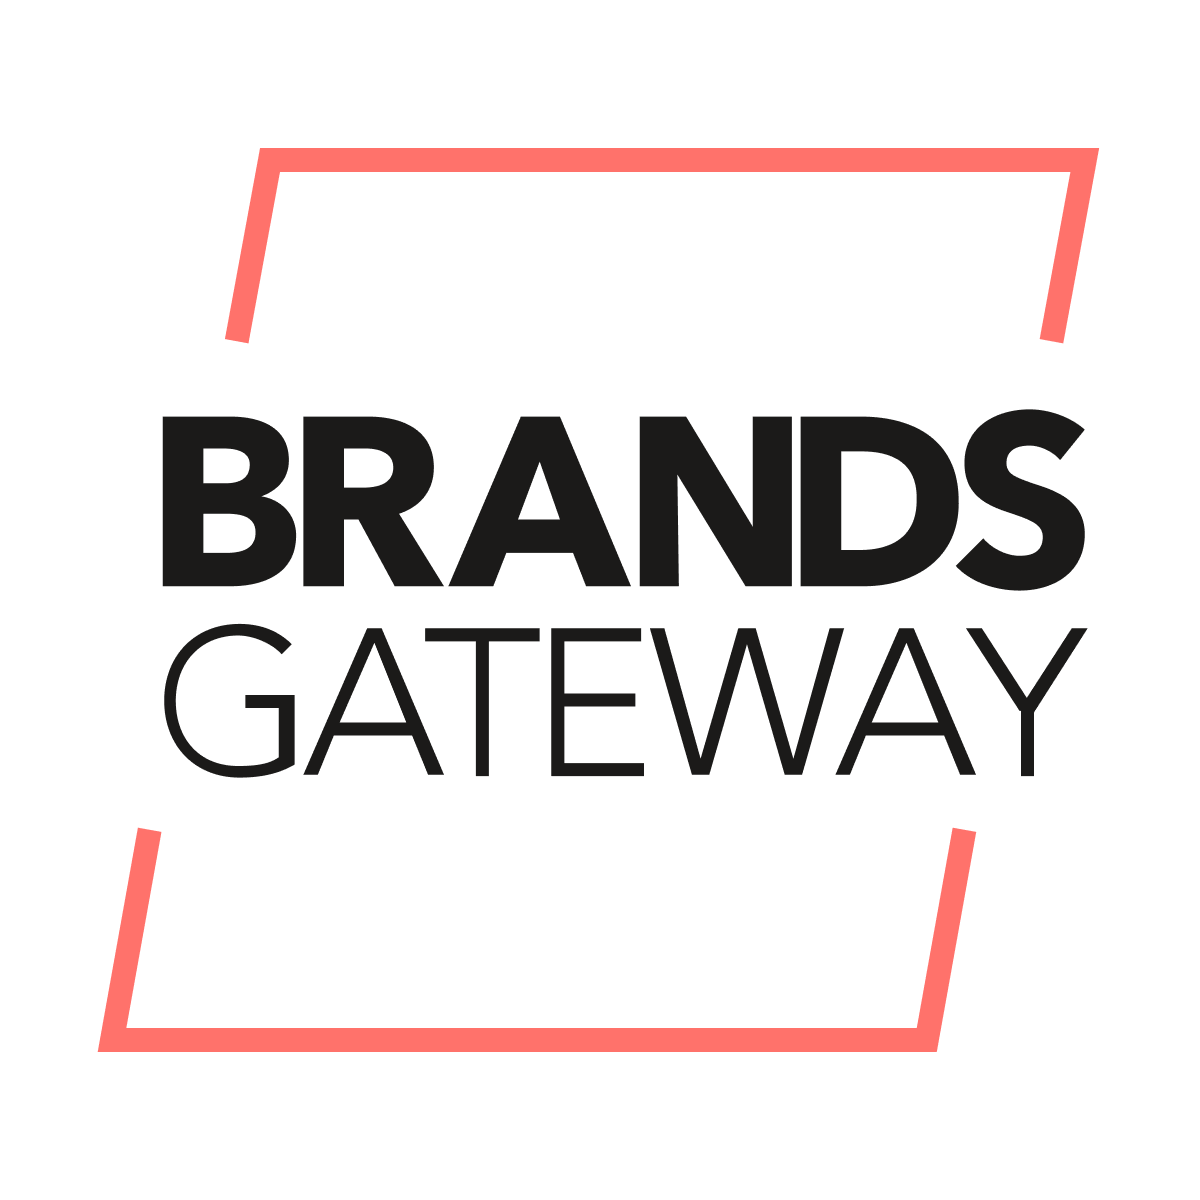 BrandsGateway‑Fashion Dropship Shopify App